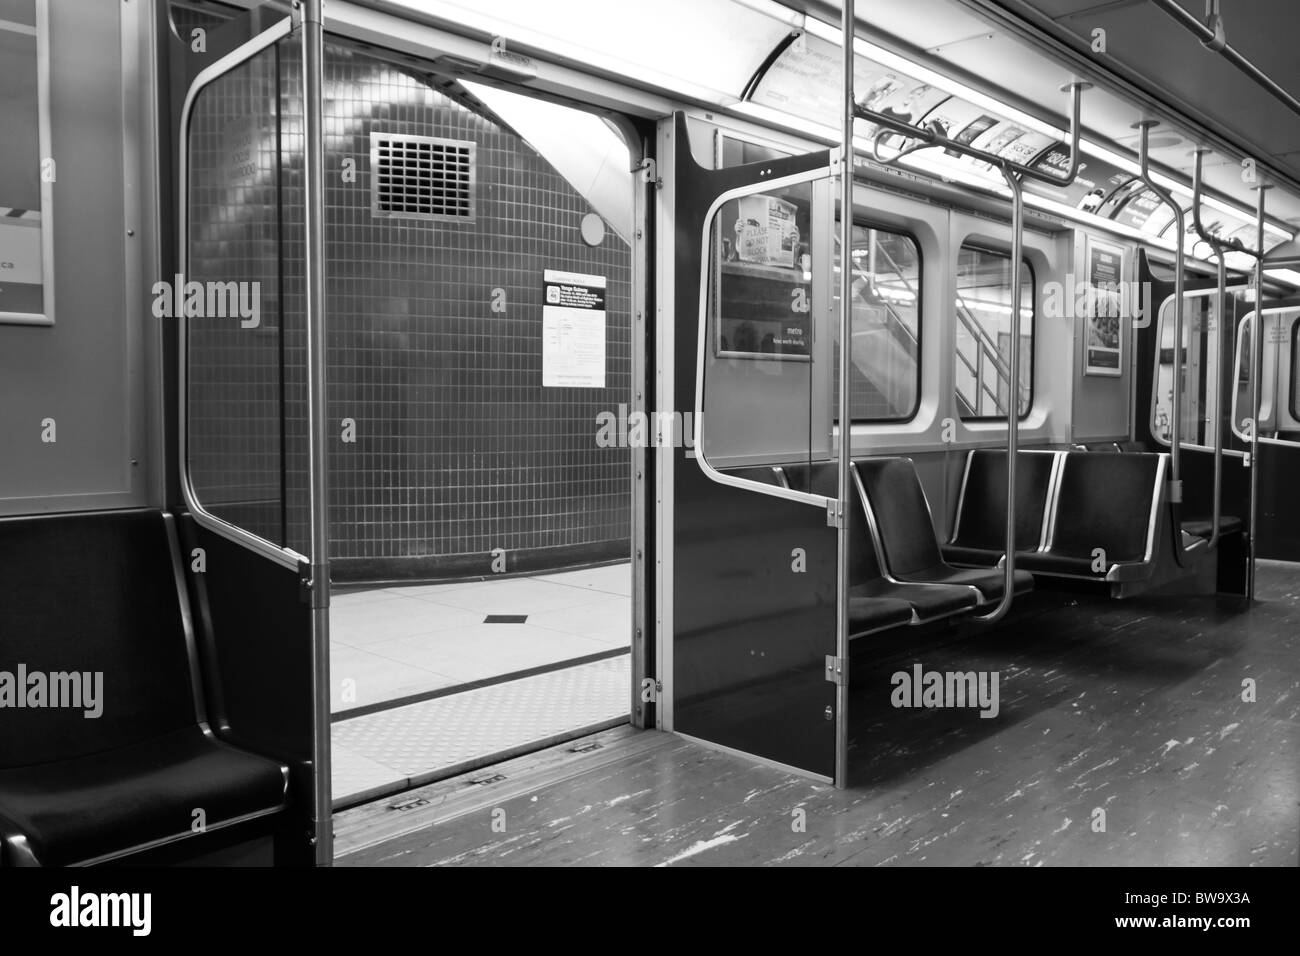 Vide intérieur métro ttc toronto noir blanc Banque D'Images